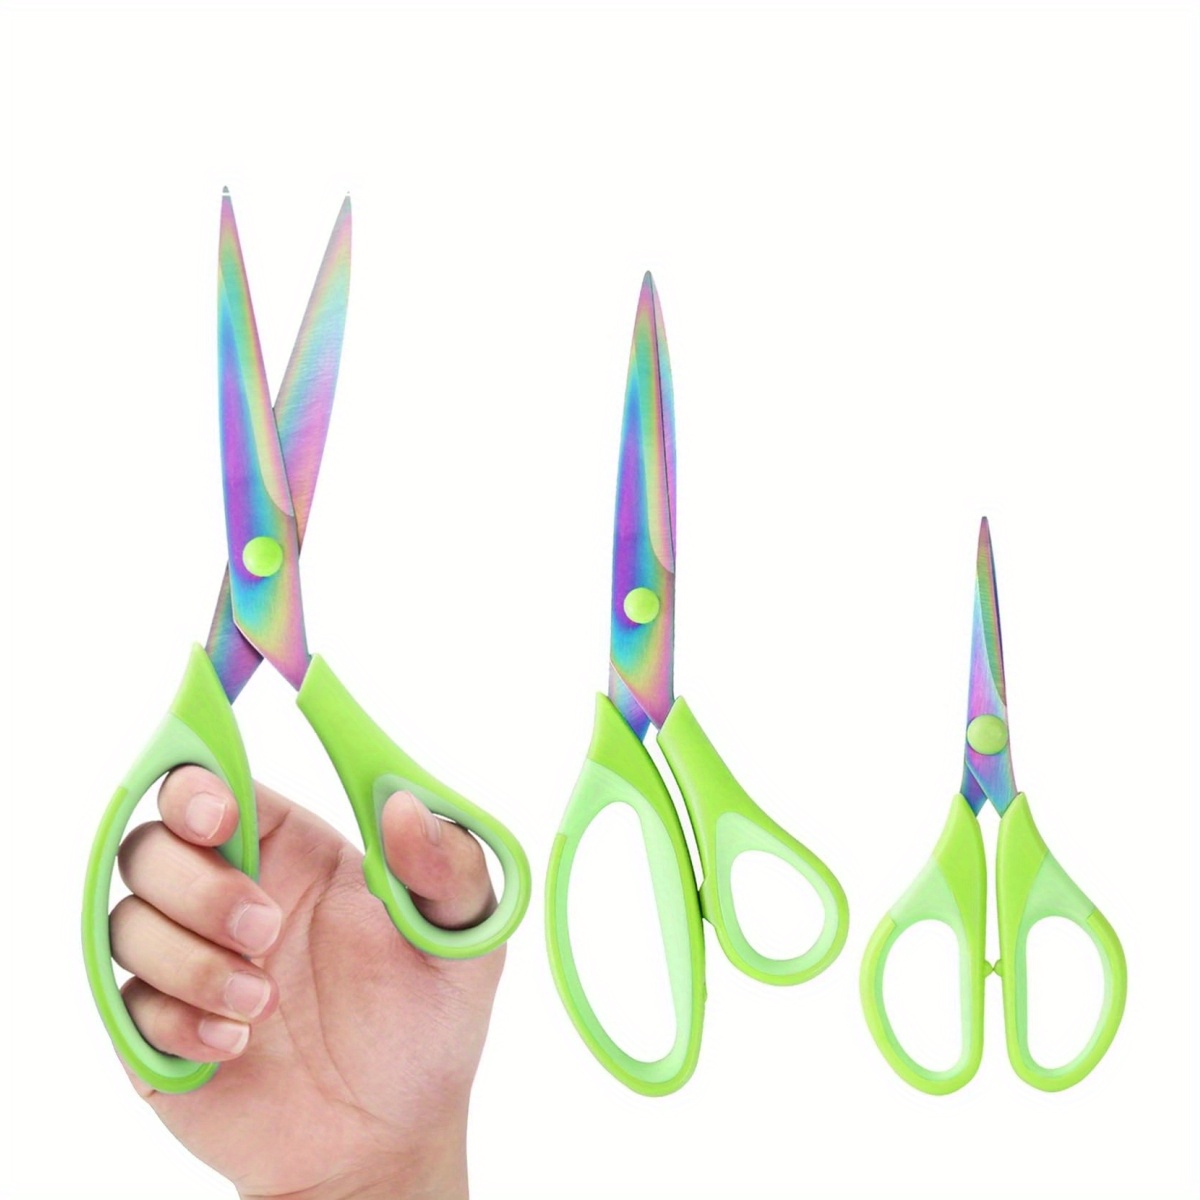 titanium office scissors-4 pack scissors set